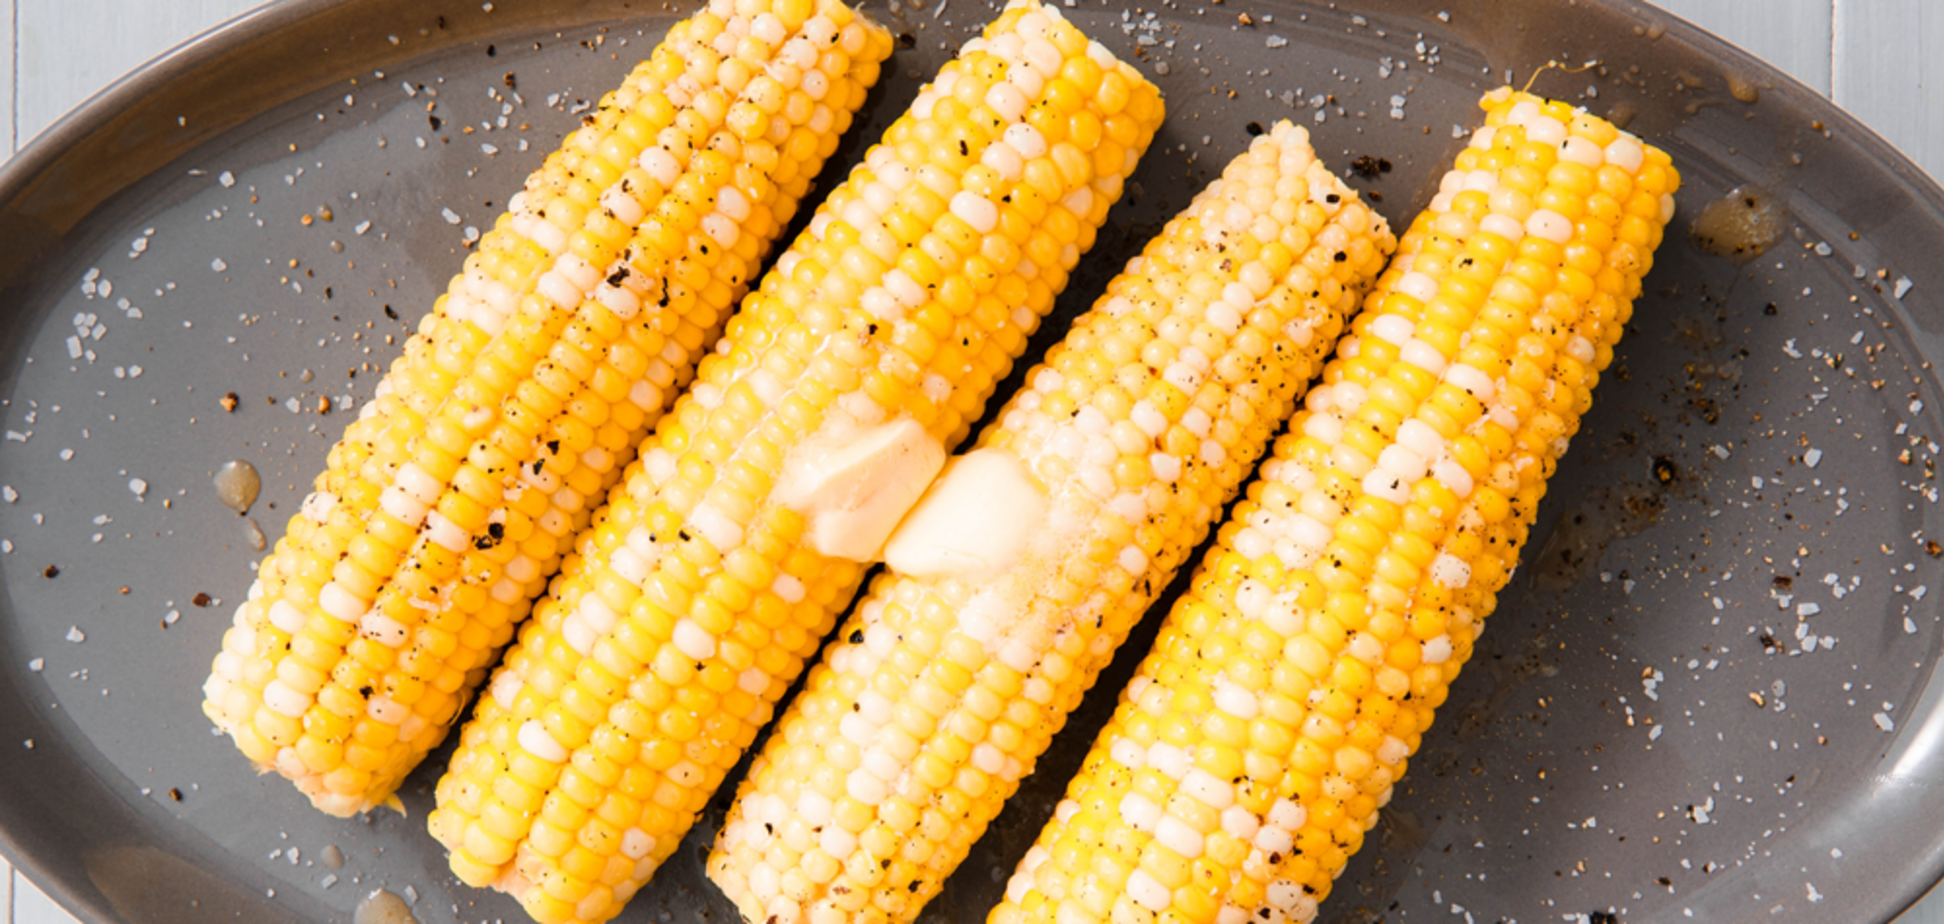 Як зварити кукурудзу, щоб була м'якою та соковитою: секретний спосіб